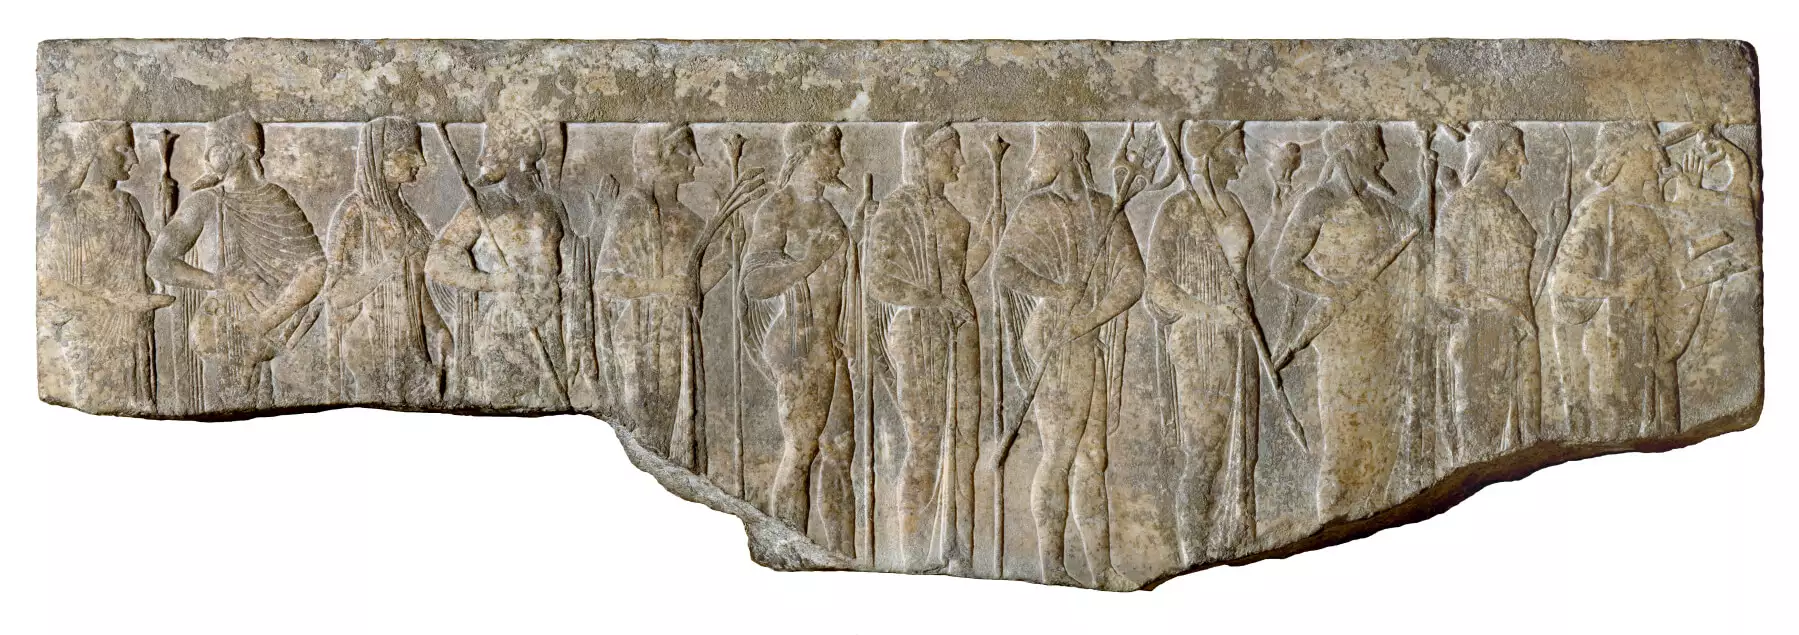 Dioses olímpicos en relieve helenístico del s. I